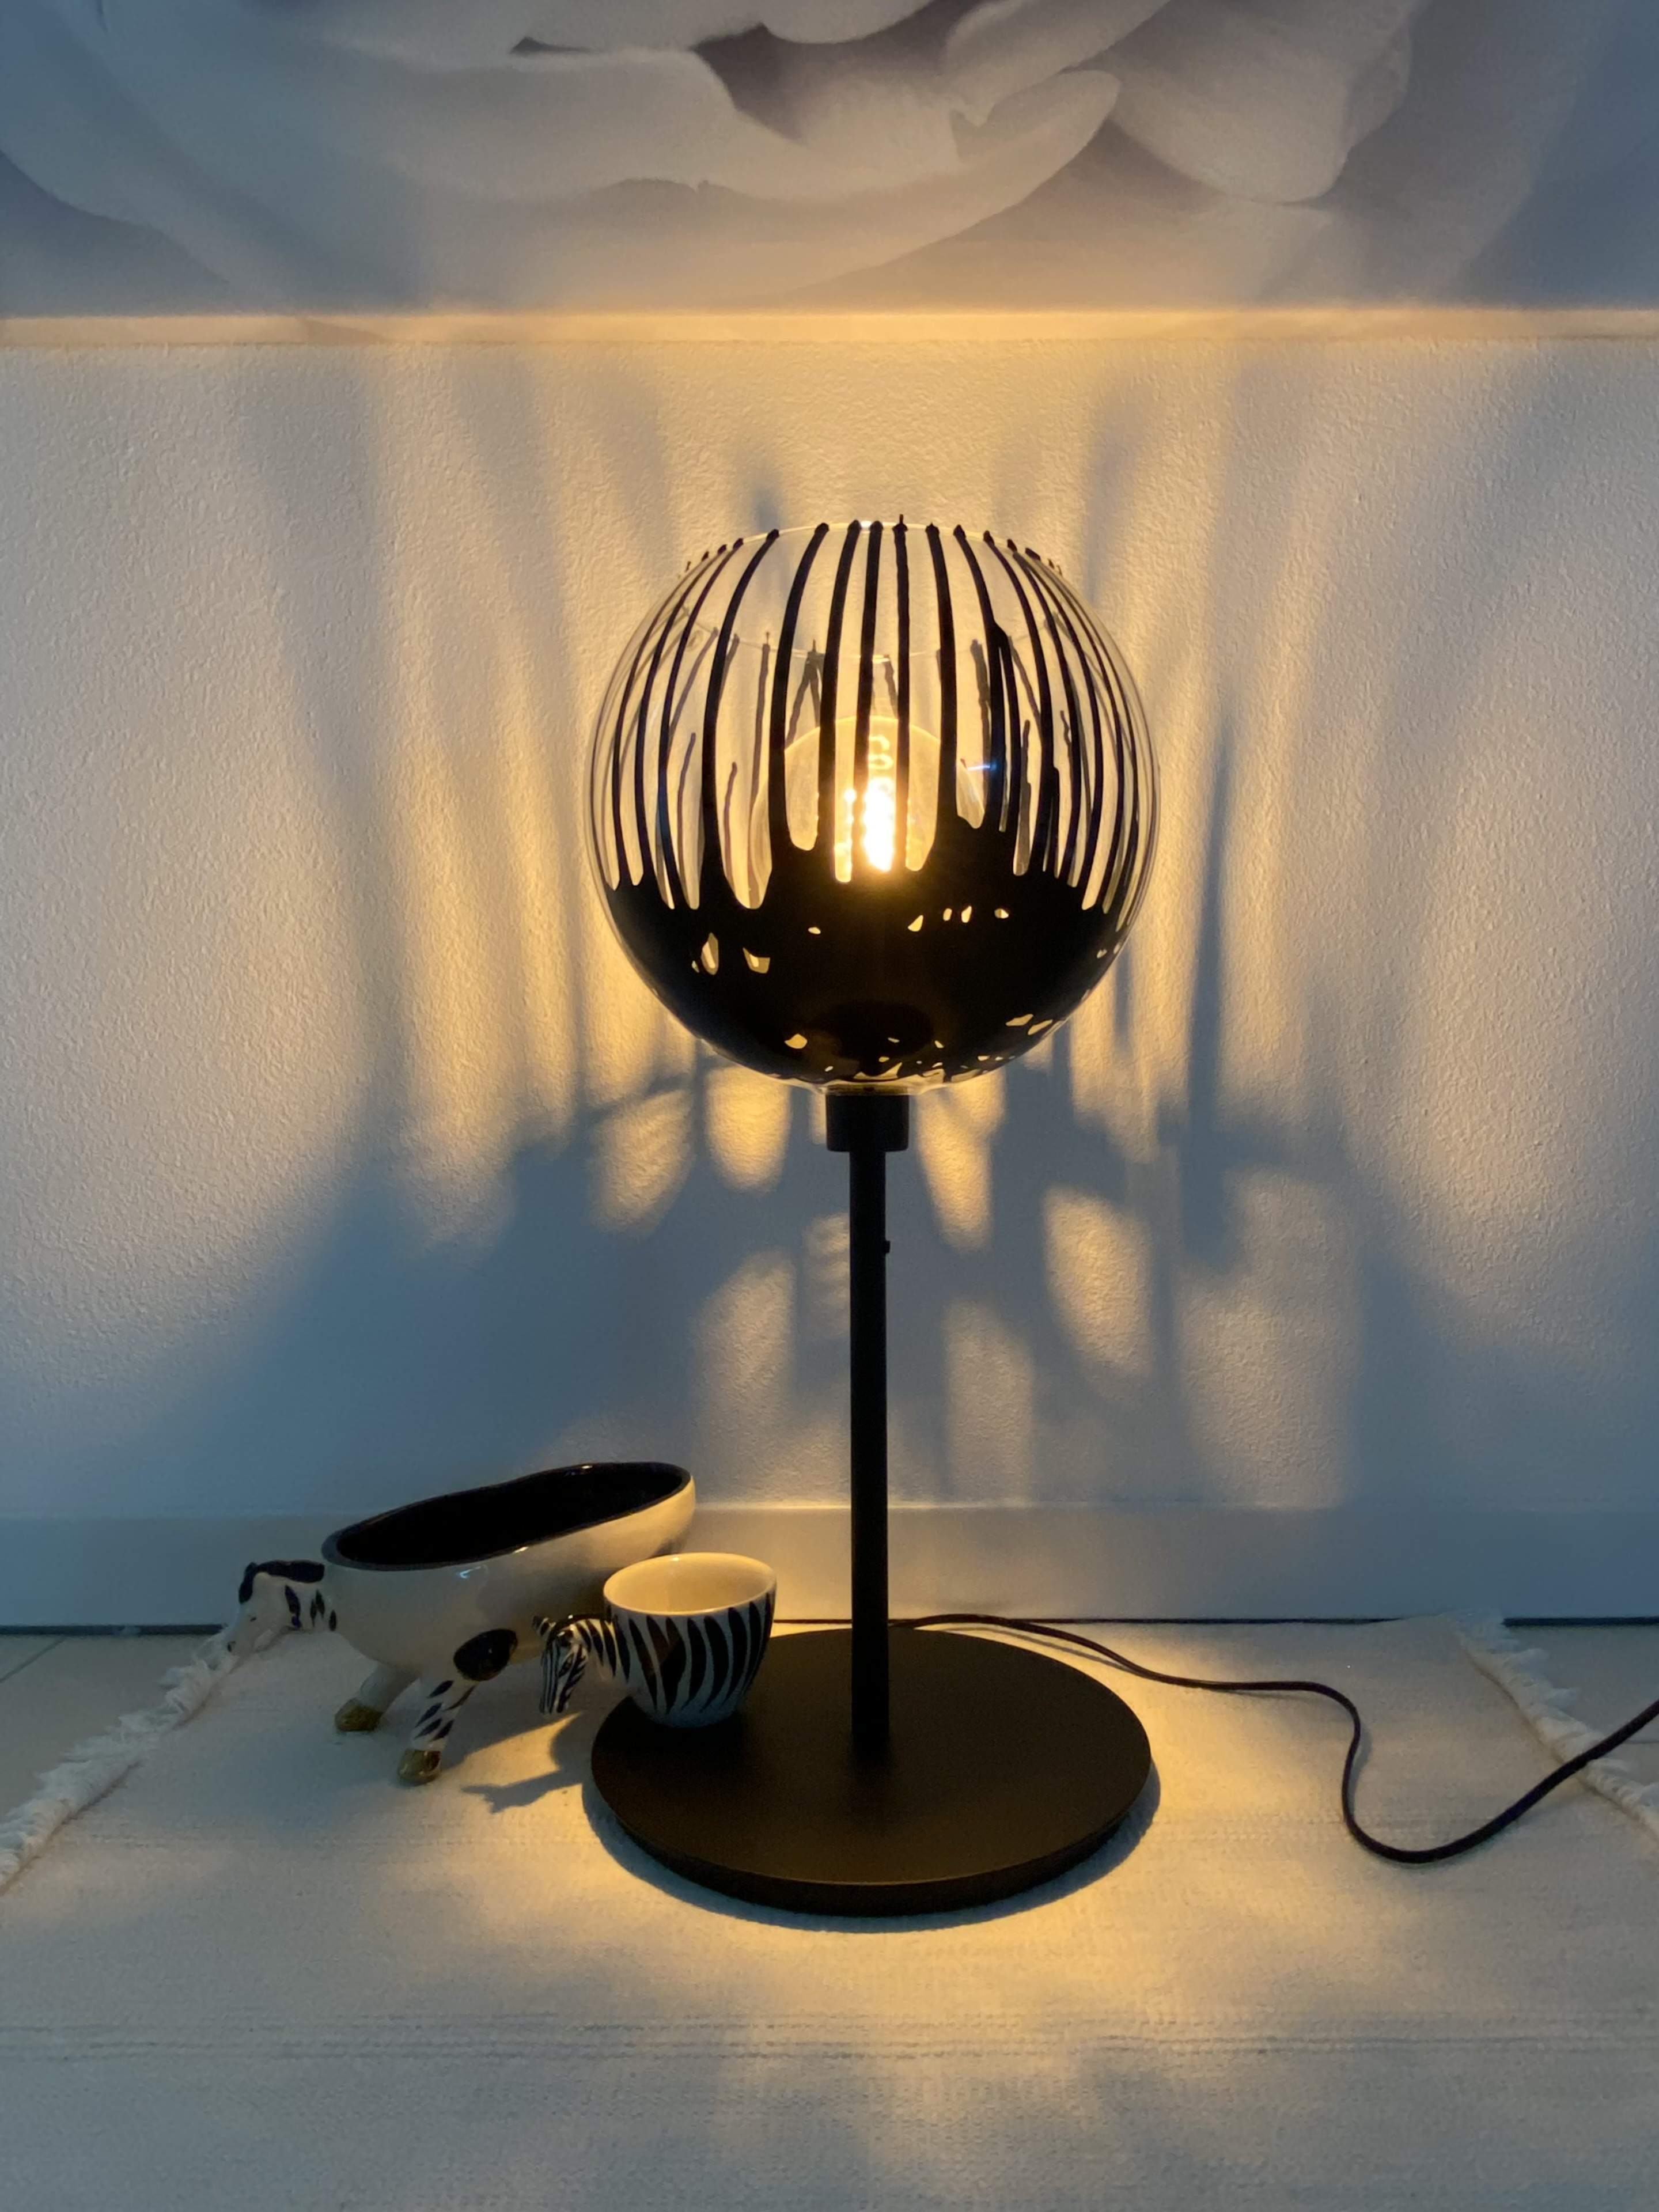 Negozio Arredamento Illuminazione Lugano Milano,Elisa Berger Design,Furniture Shop Online,Black Lamp